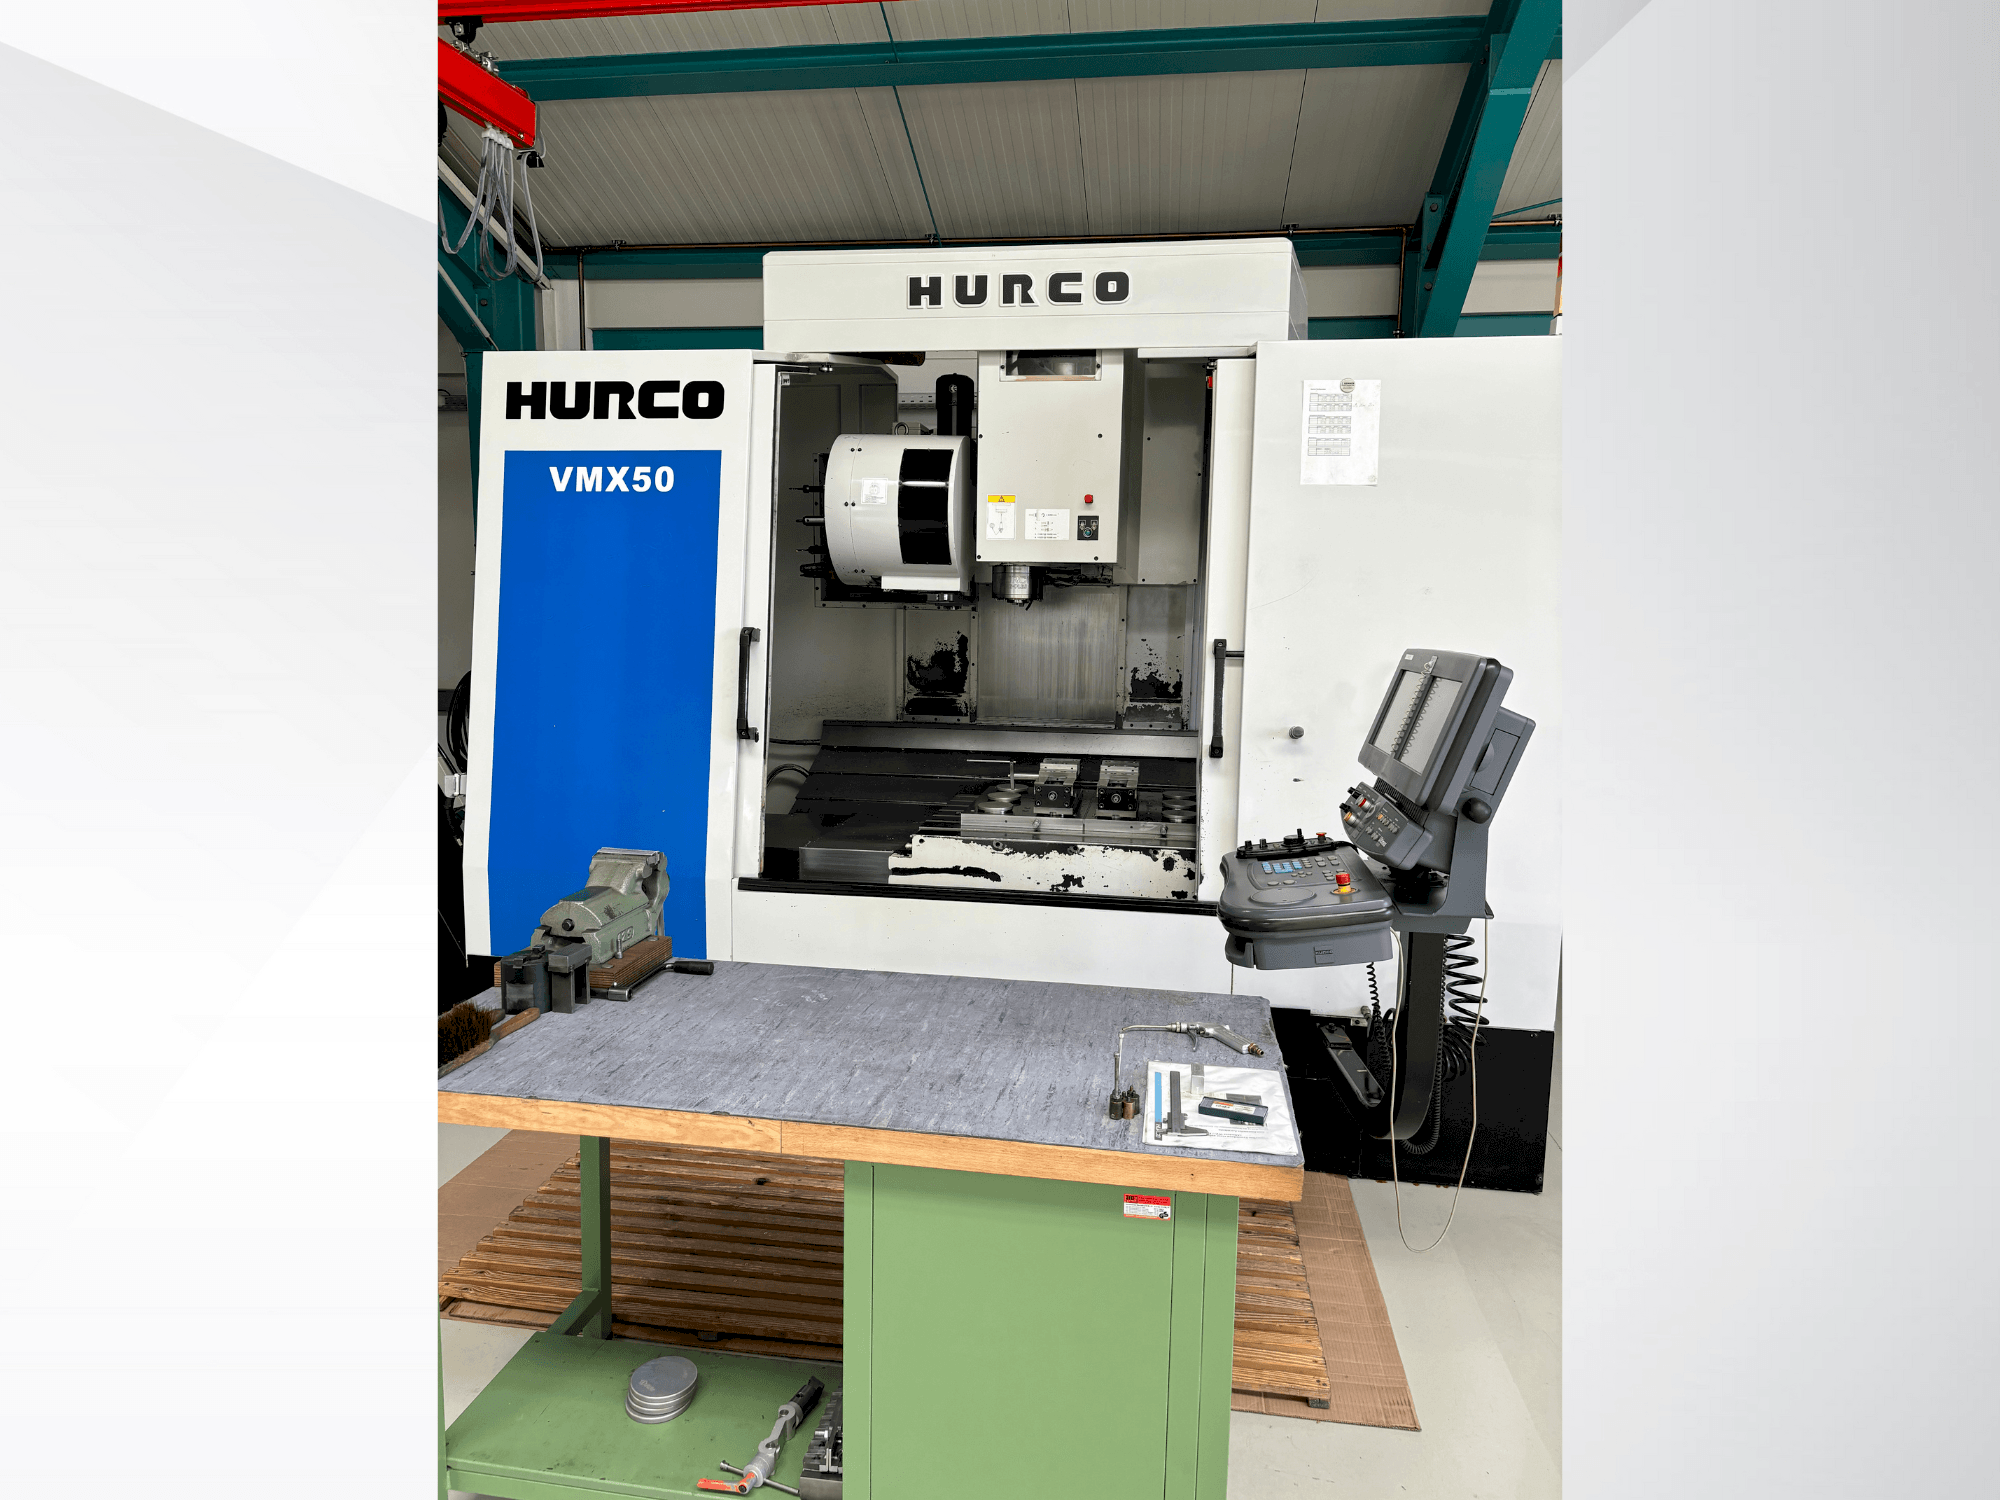 Vooraanzicht  van Hurco VMX50  machine